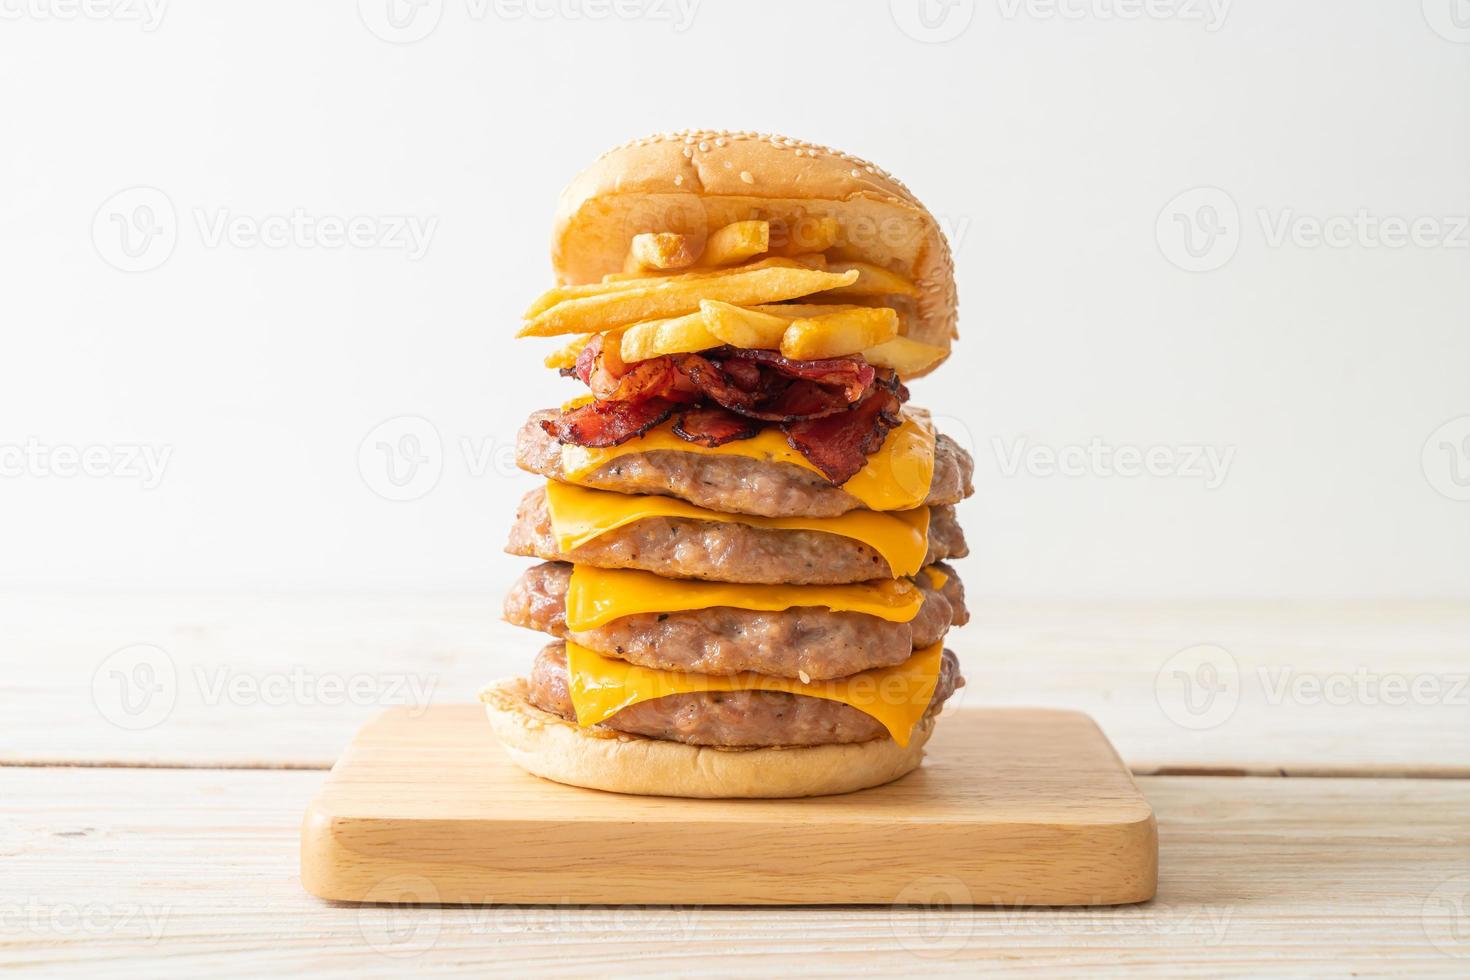 hambúrguer de porco ou hambúrguer de porco com queijo, bacon e batatas fritas foto